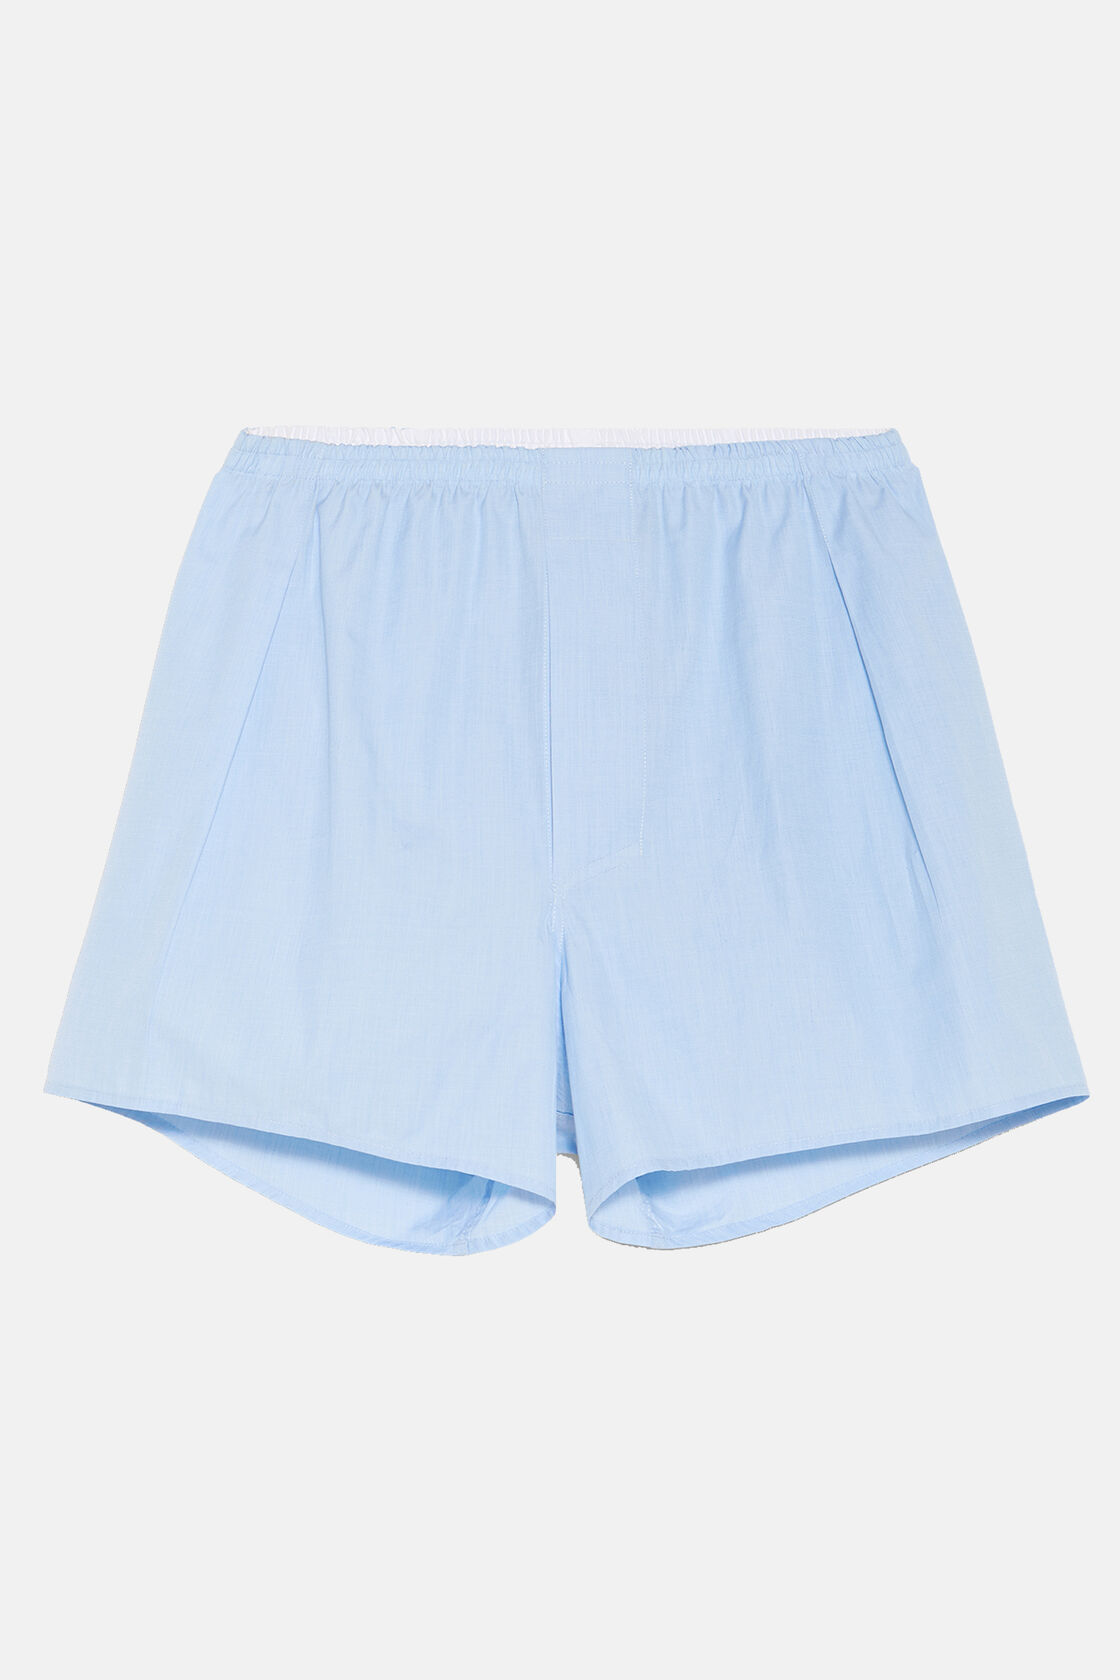 Cotton Boxer Shorts, Plain Light blue, hi-res